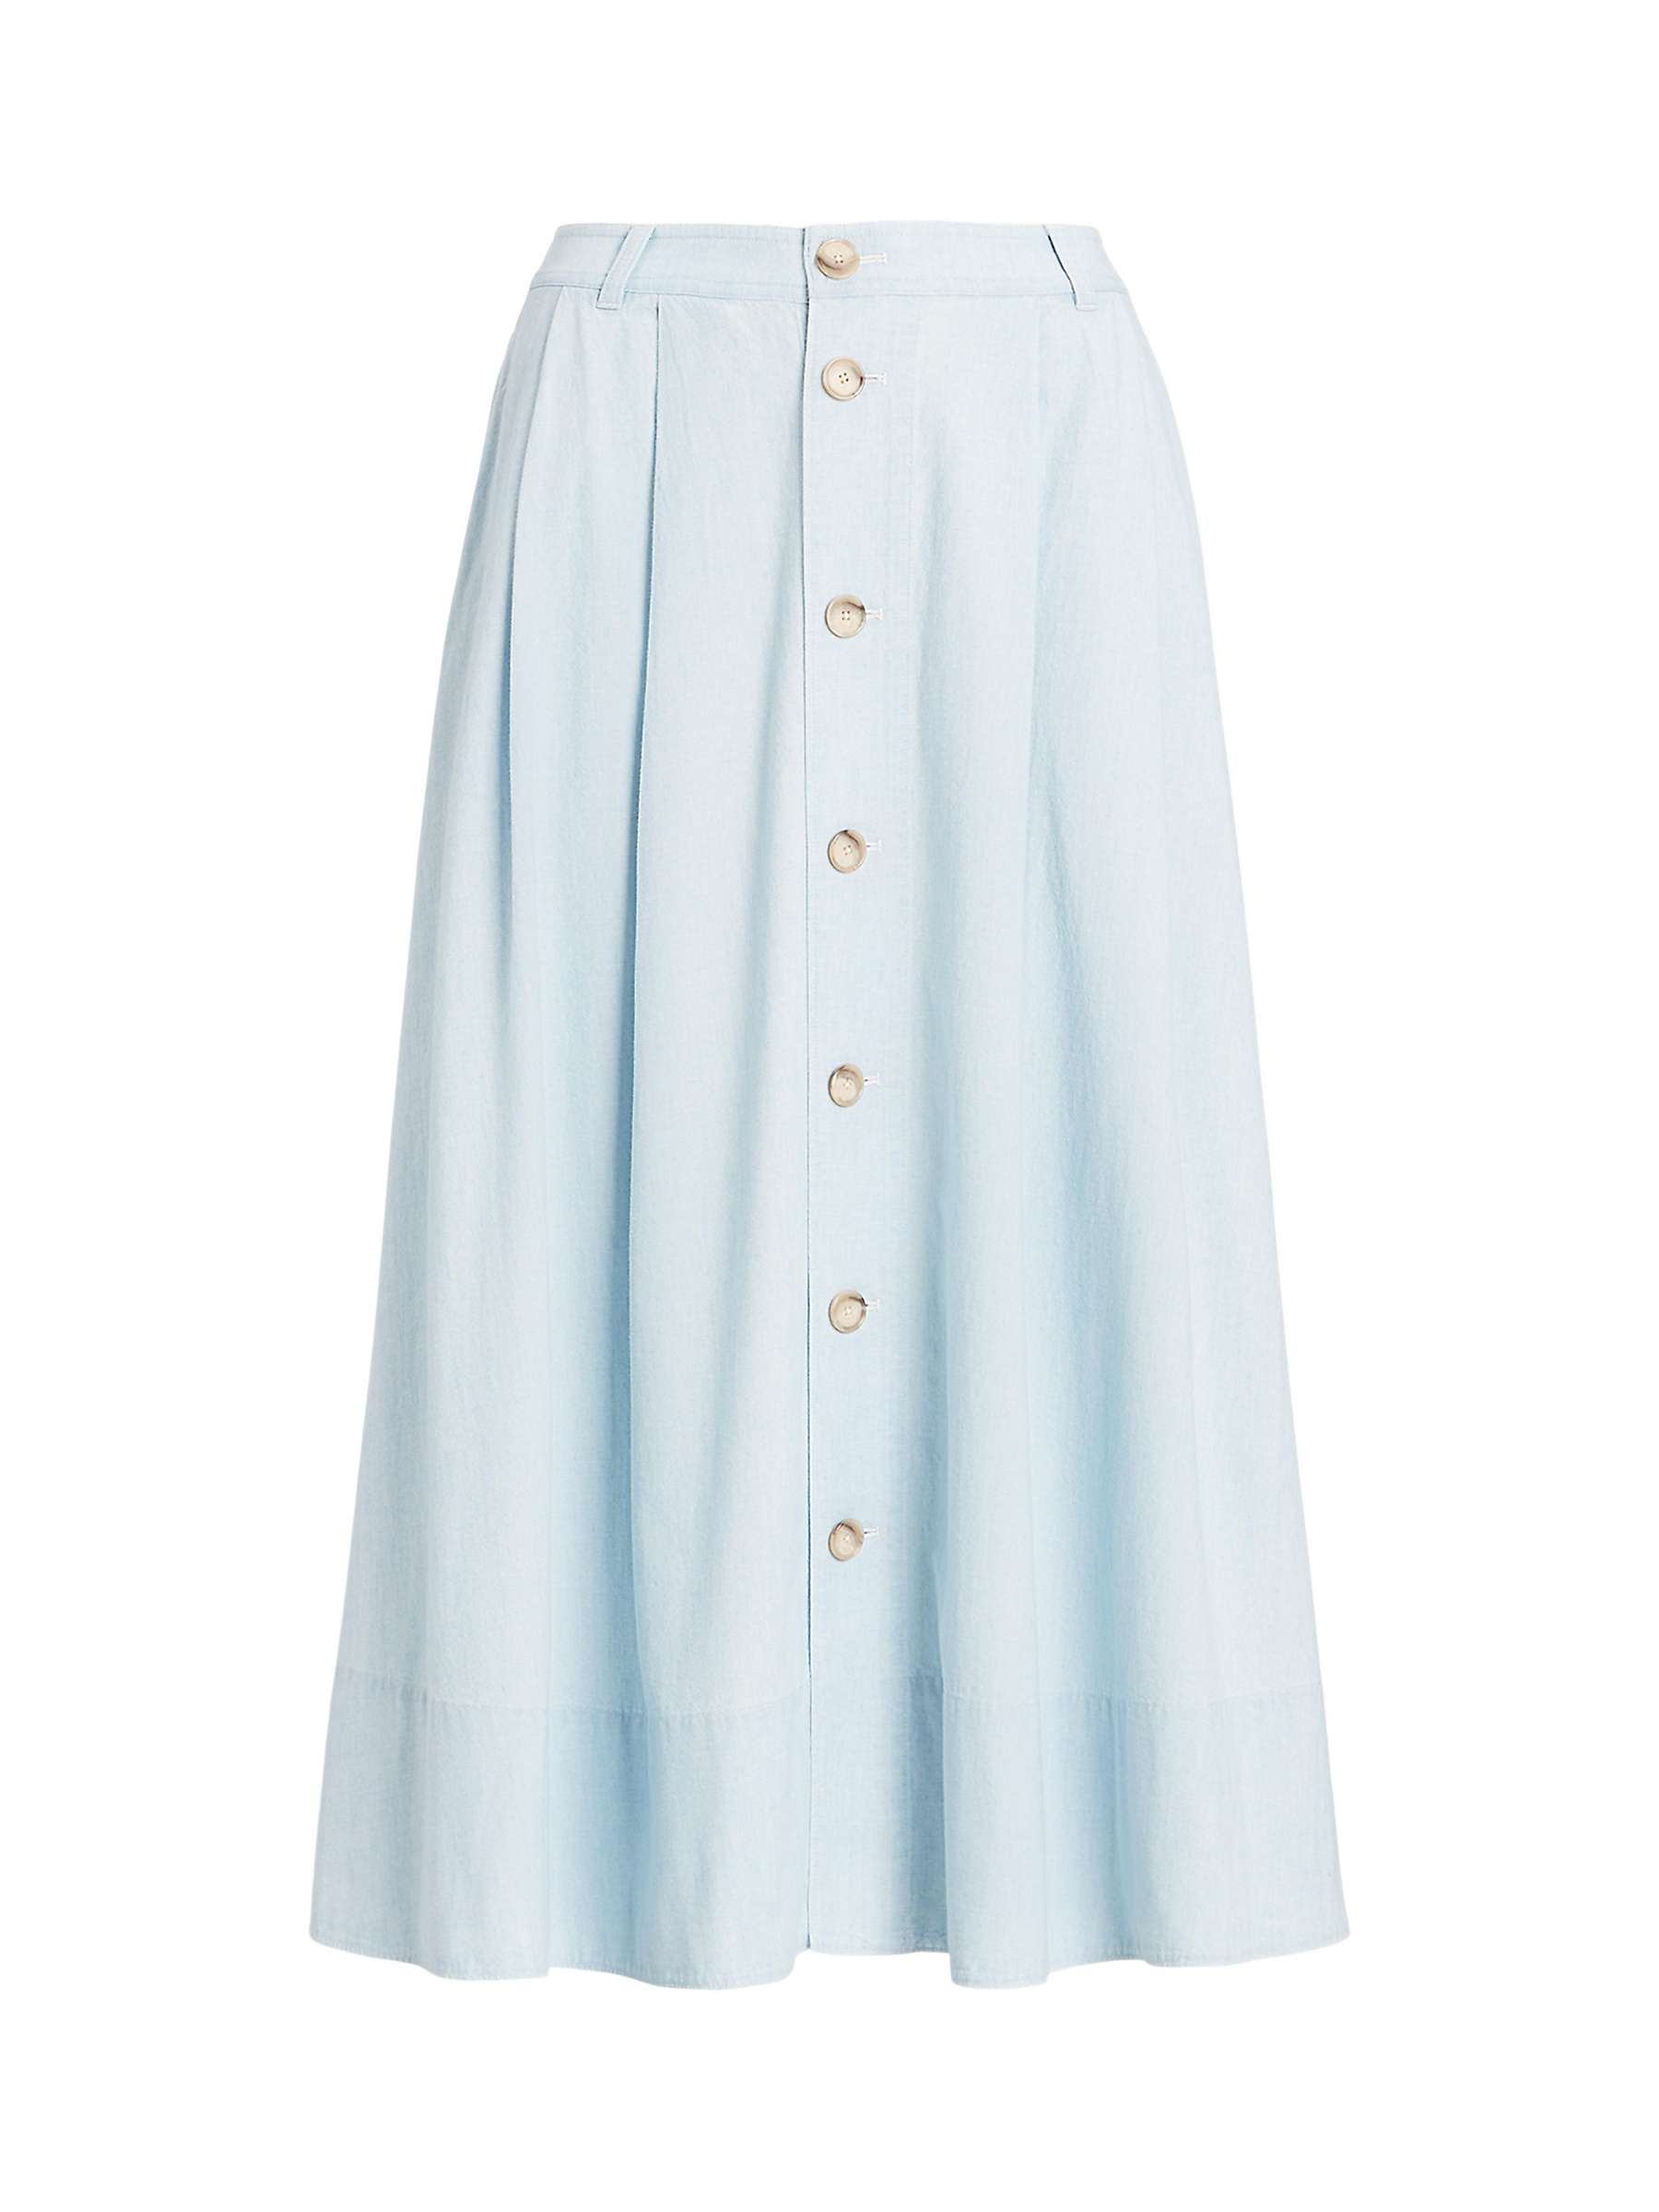 Buy Polo Ralph Lauren Chambray Midi Skirt, Light Blue Online at johnlewis.com